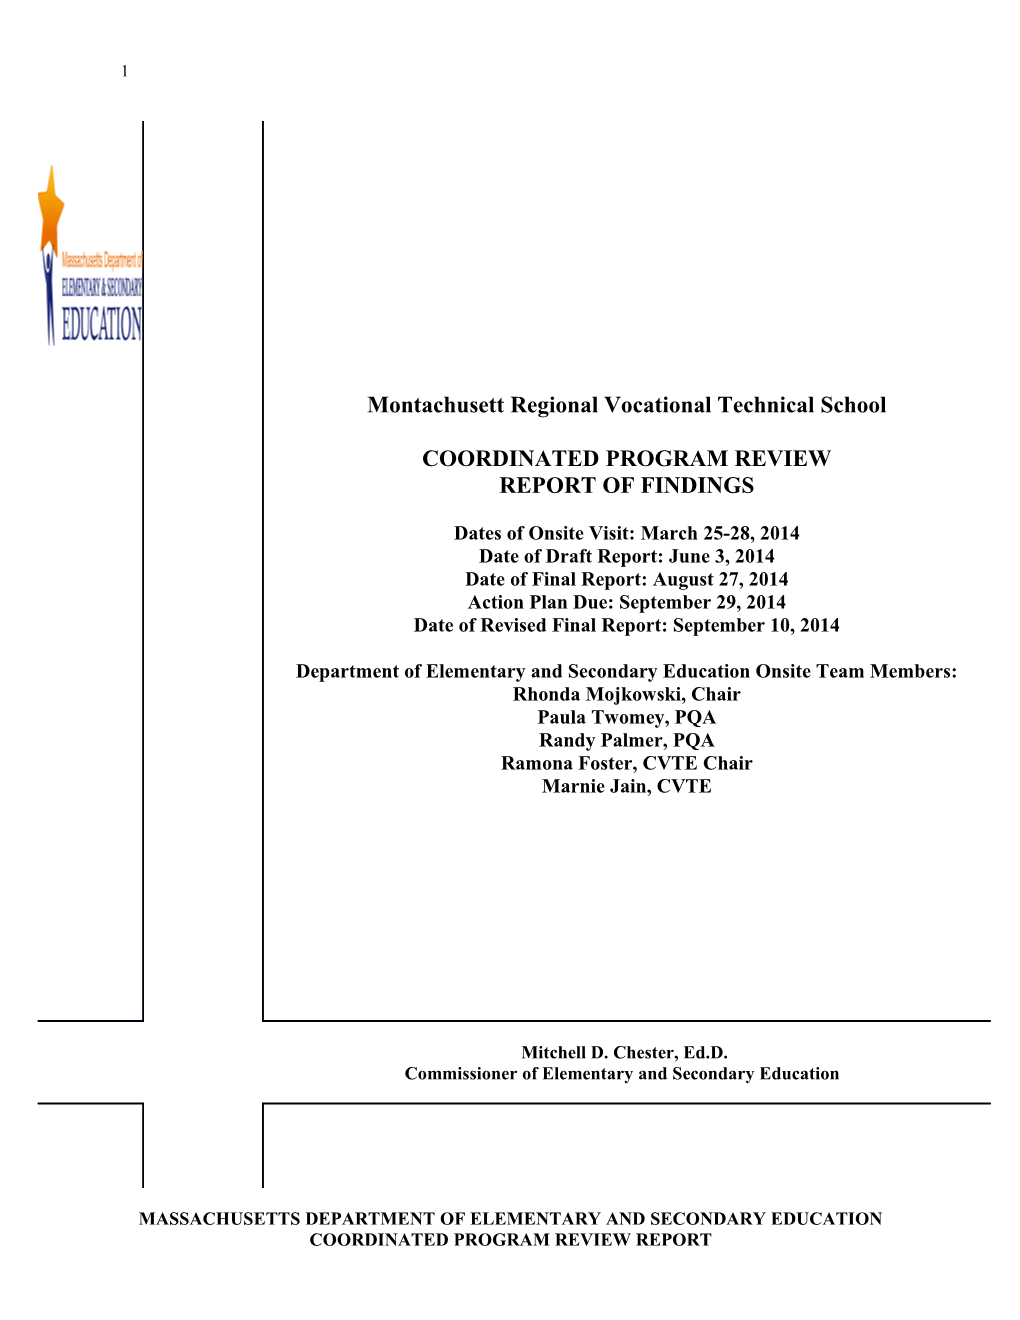 Montachusett RVTS CPR Final Report 2014